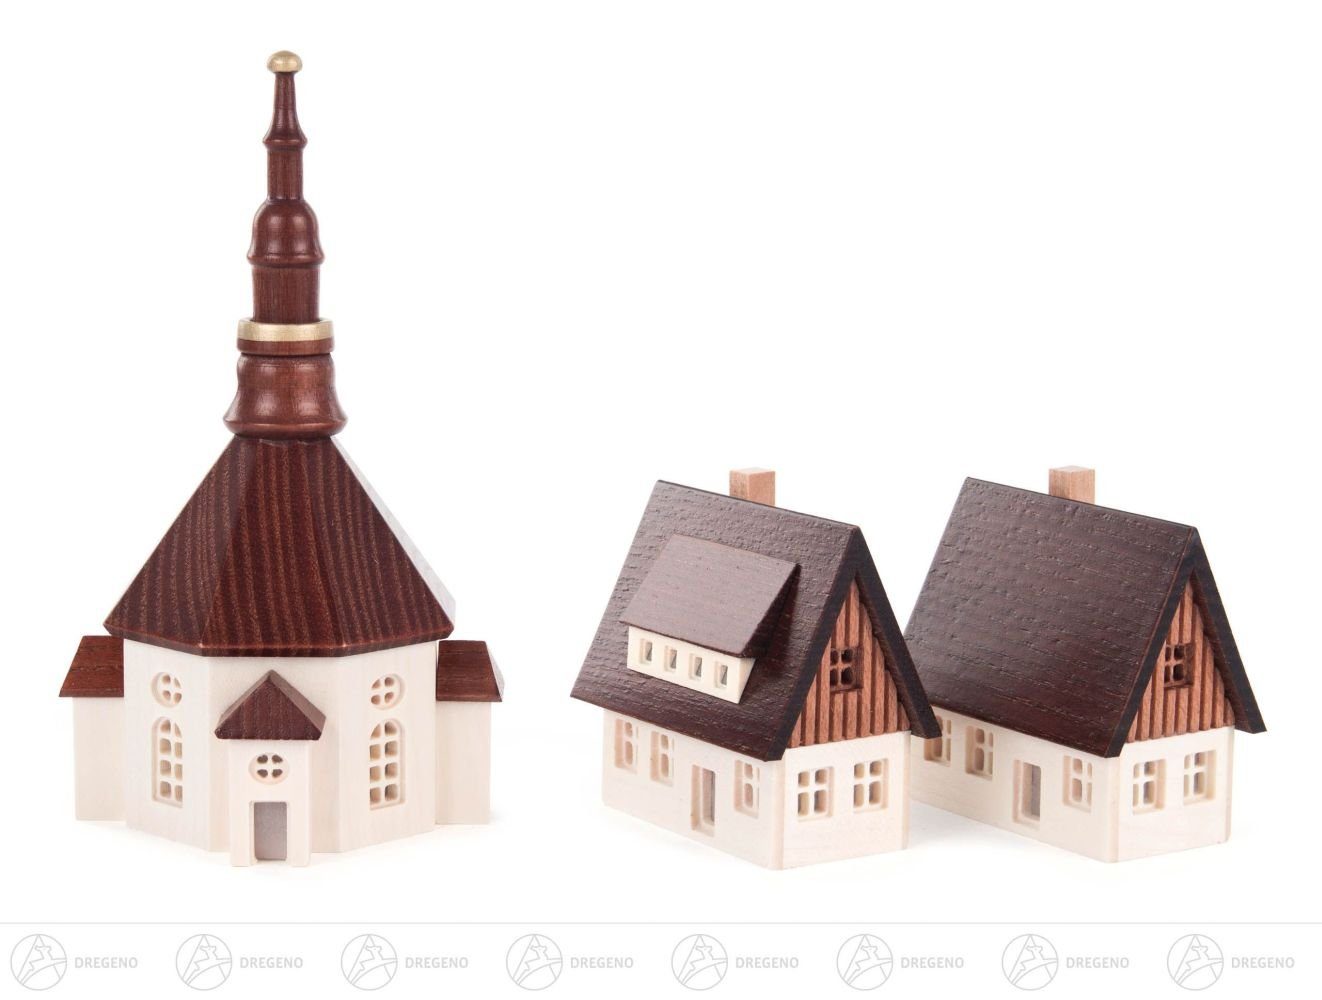 Dregeno Erzgebirge Weihnachtsfigur Miniatur Seiffener Kirche und 2 Häuser mit ausgefrästen Fenstern, kl, Miniatur Seiffener Kirche Häuser